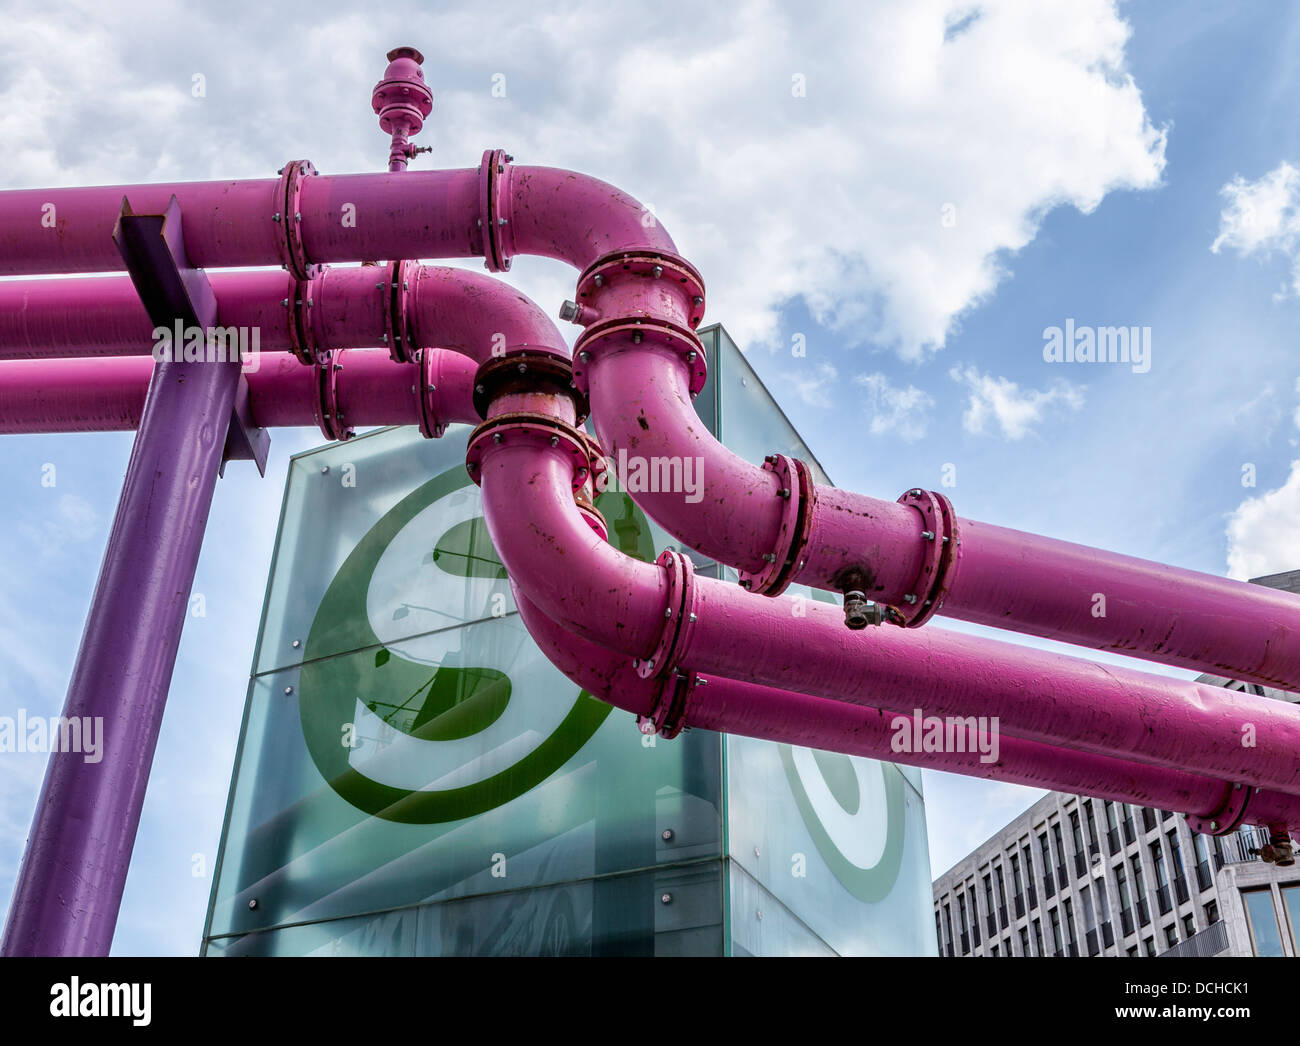 Die rosafarbenen Wasserabflussrohre, die Grundwasser von Baustellen und S-Bahn-Station ableiten, stehen gegen einen trüben blauen Himmel - Berlin Stockfoto